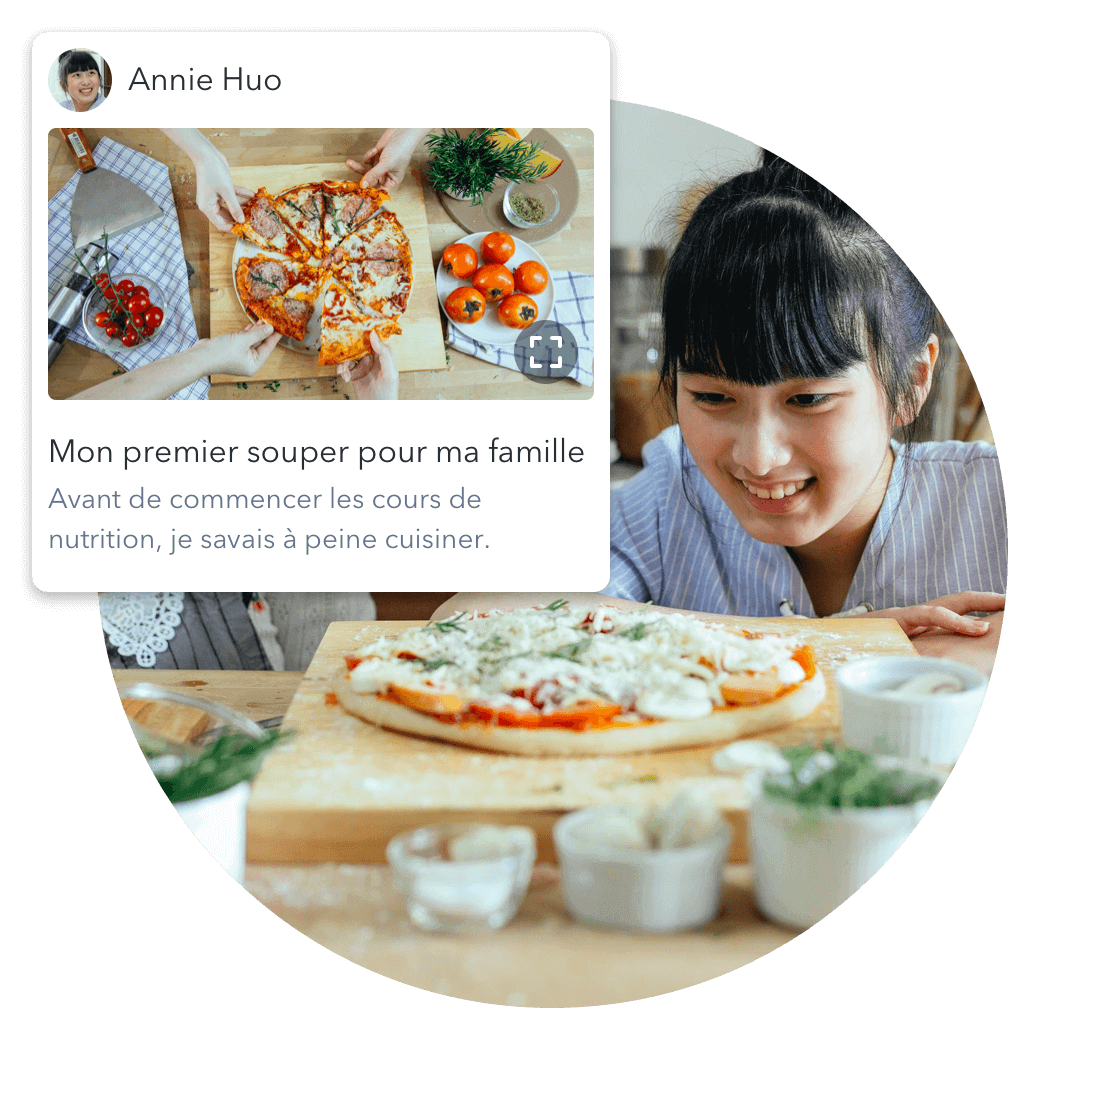 Un élève publie la photo d’une pizza qu'il a préparée pour le souper, en réfléchissant à son parcours culinaire et à tout ce qu'il a appris.